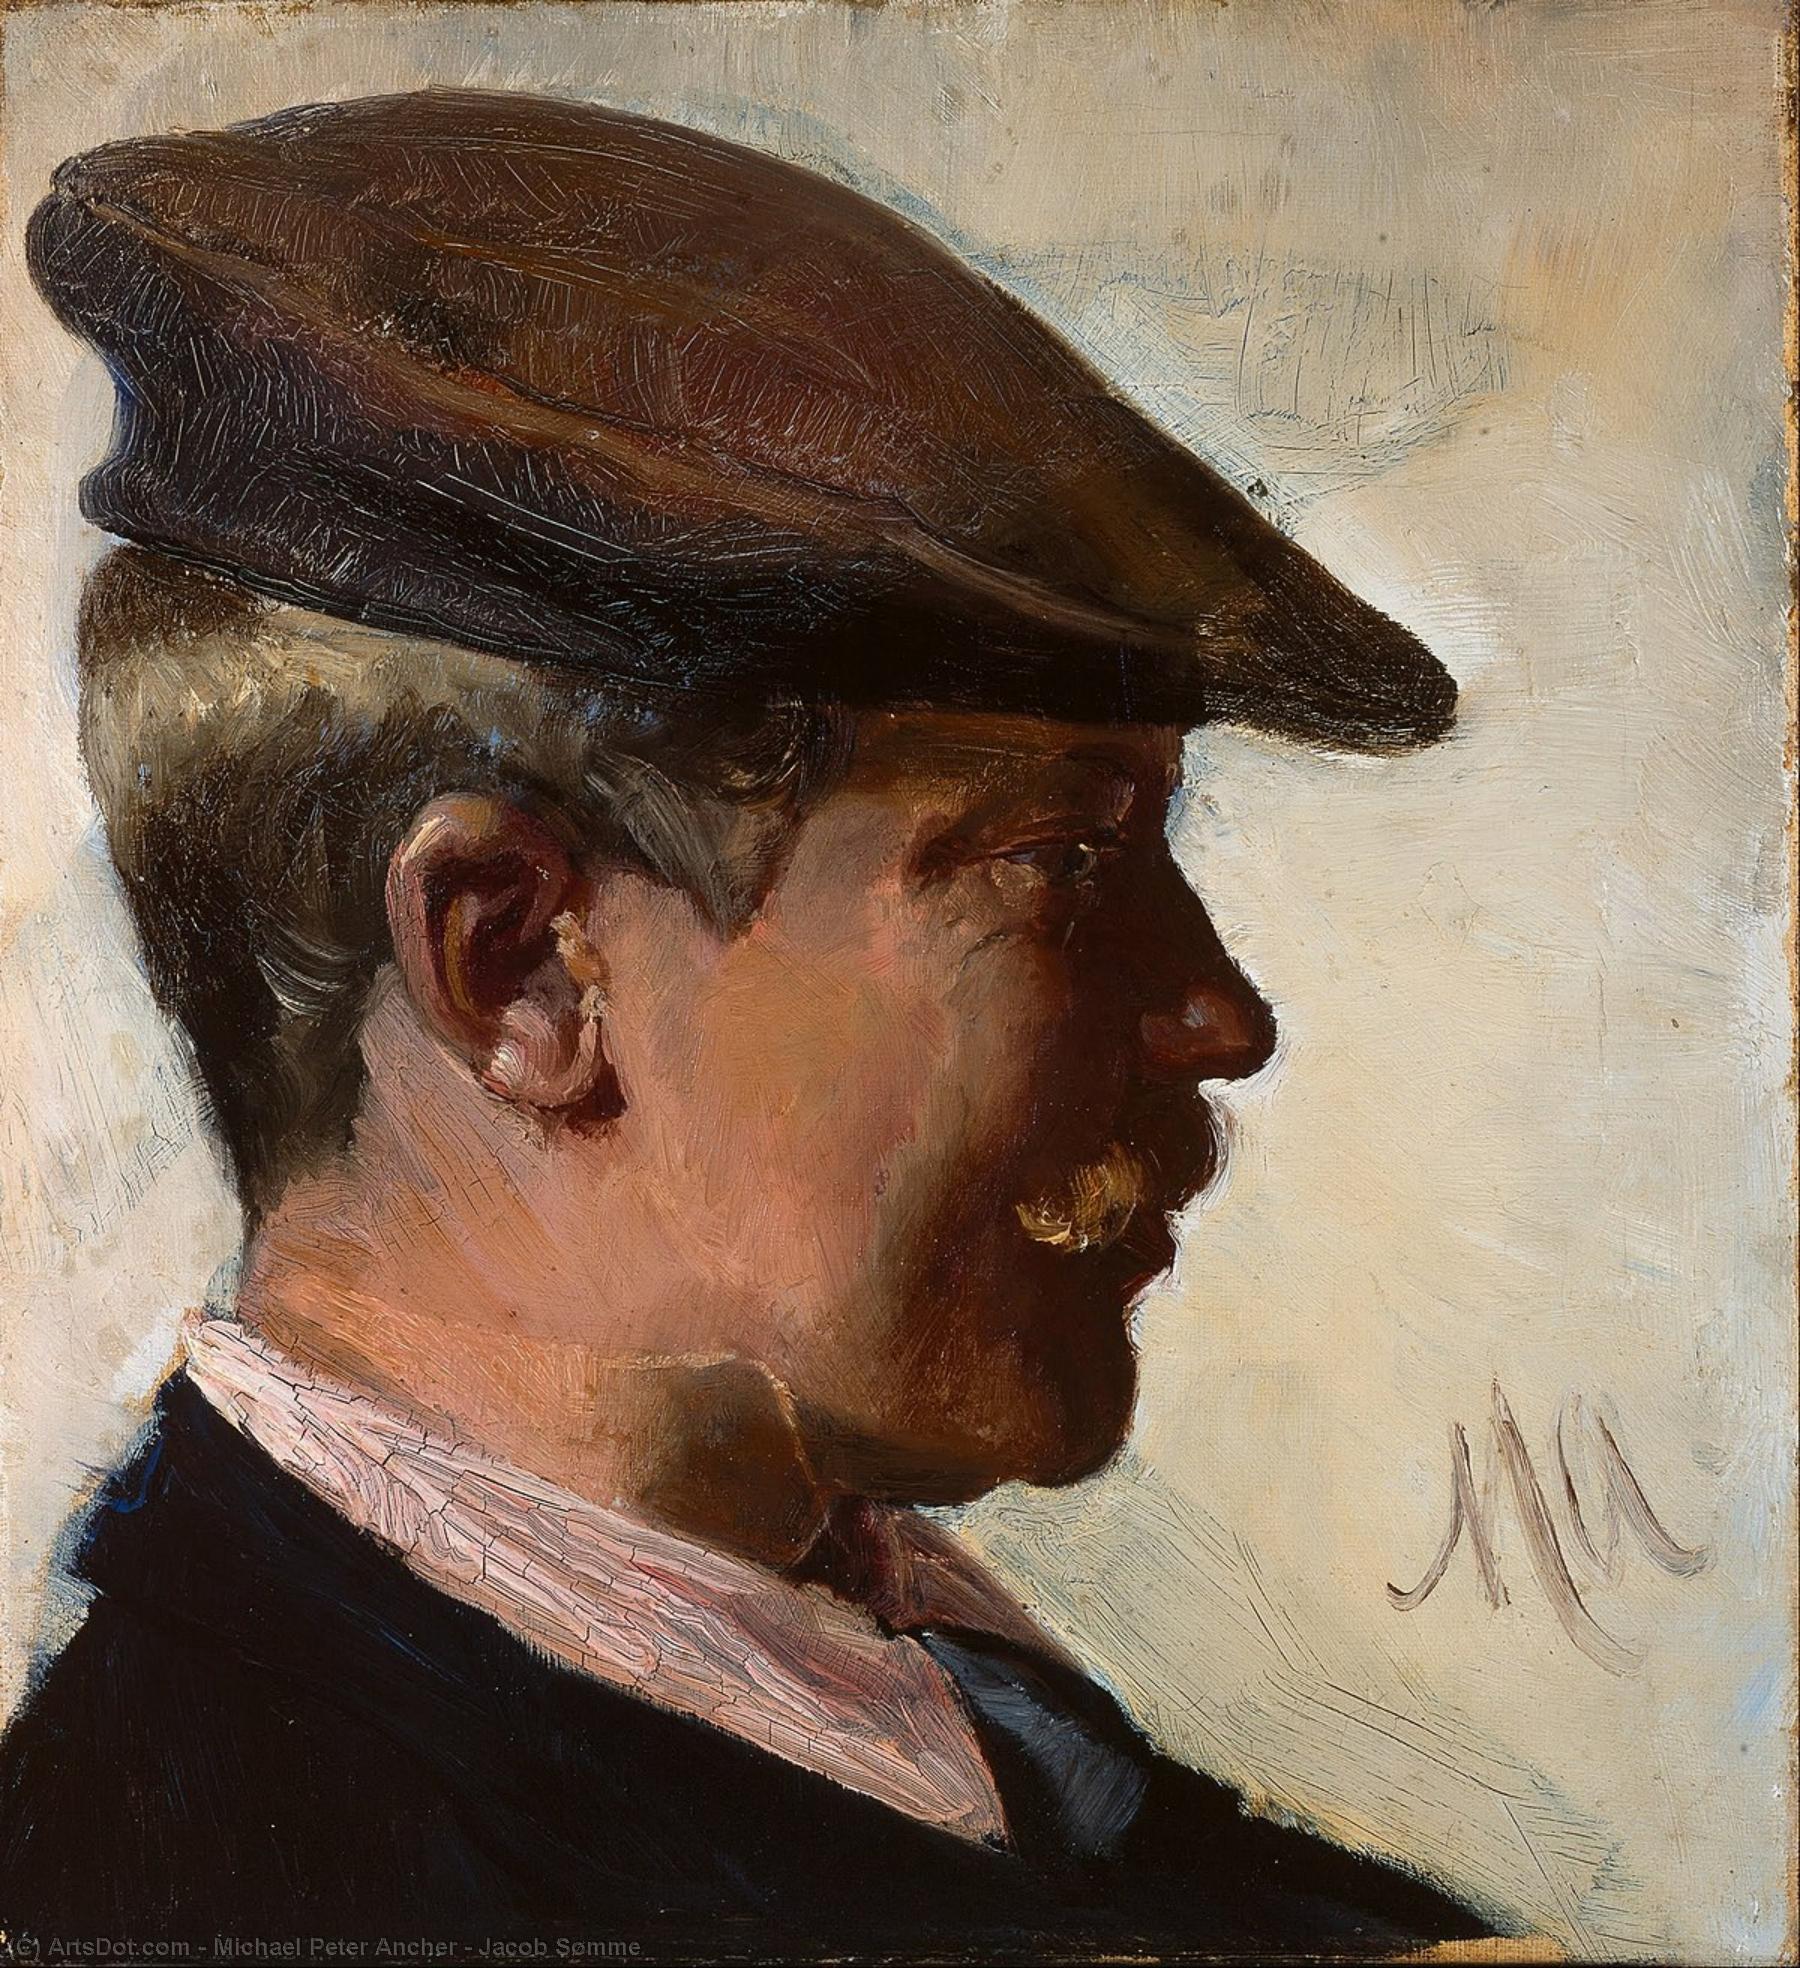 Comprar Reproducciones De Arte Del Museo Jacob Sømme, 1890 de Michael Peter Ancher (1849-1927) | ArtsDot.com